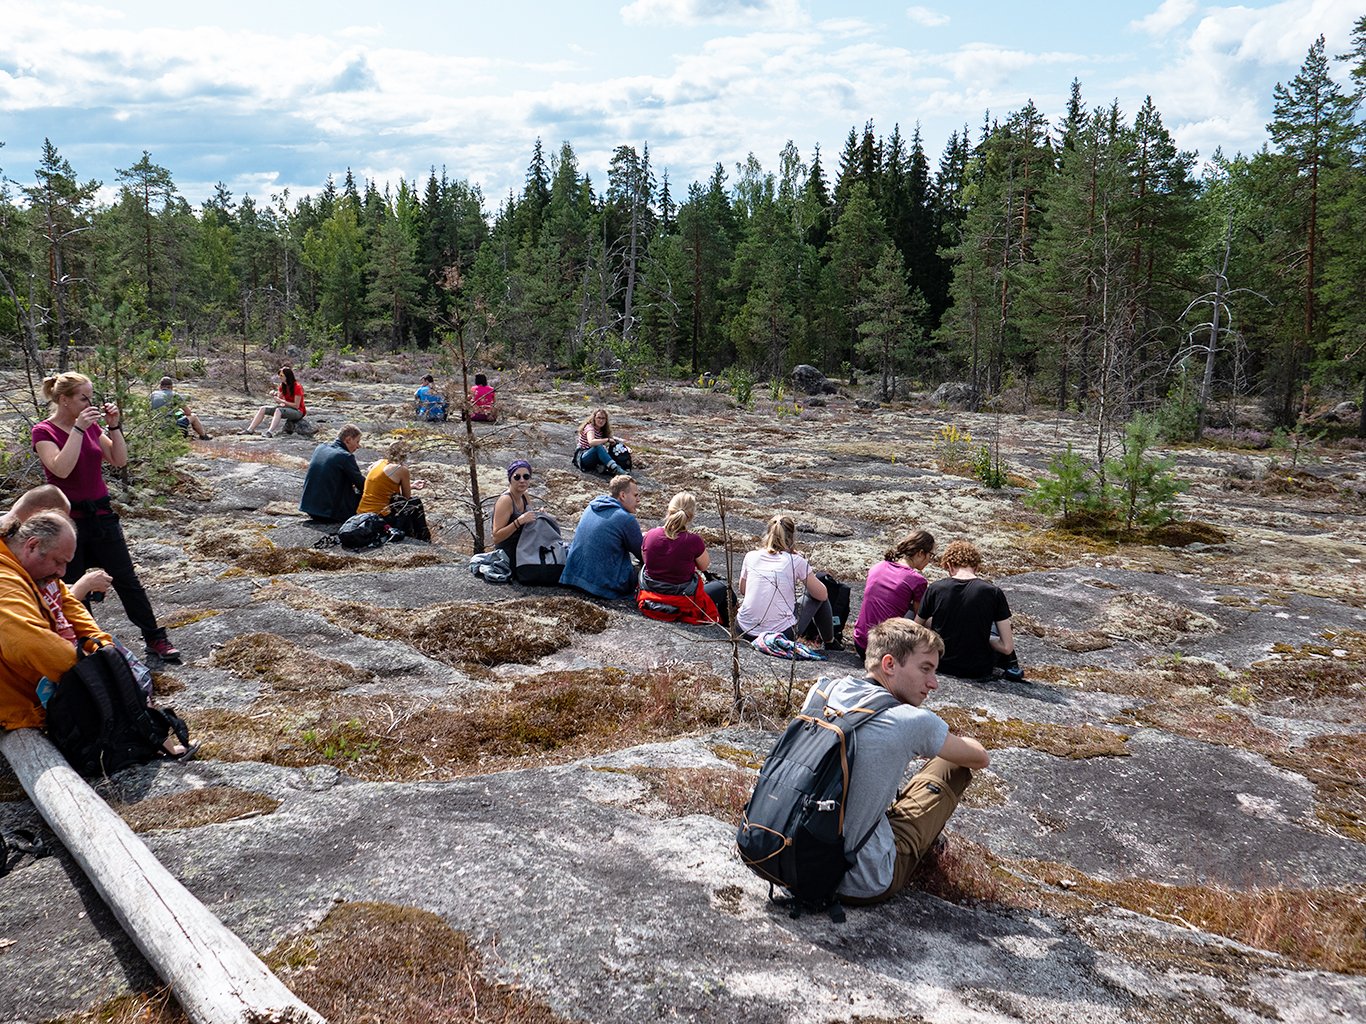 Pauza na kamenné mýtině během túry v parku Nuuksio nedaleko Helsinek